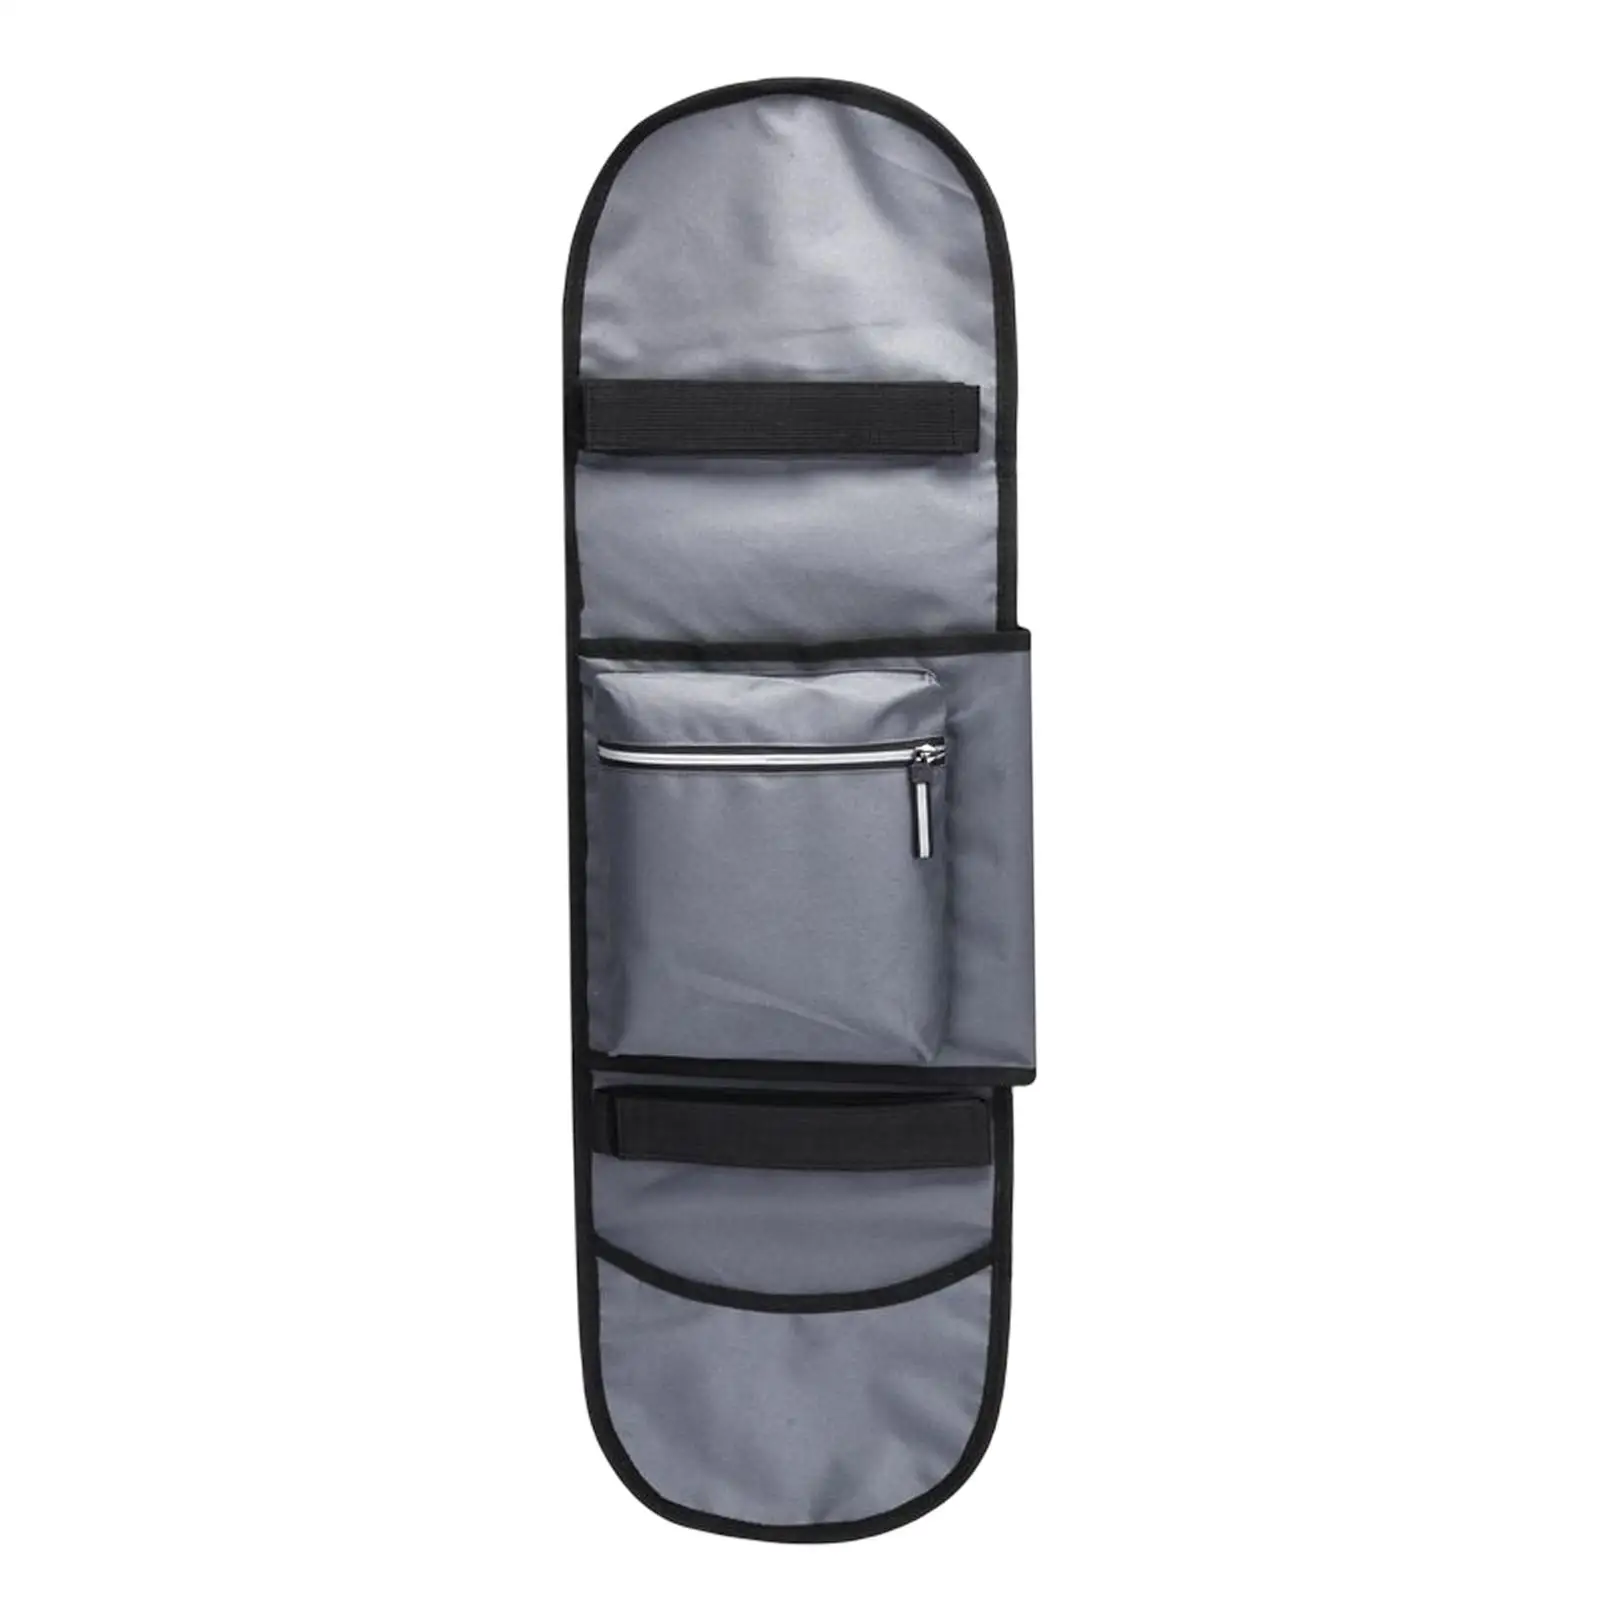 Oxford Cloth Skateboard Bag with Two Adjustable Shoulder Straps Carrier Folding Skateboard Backpacks for Deck Travel Unisex Kids